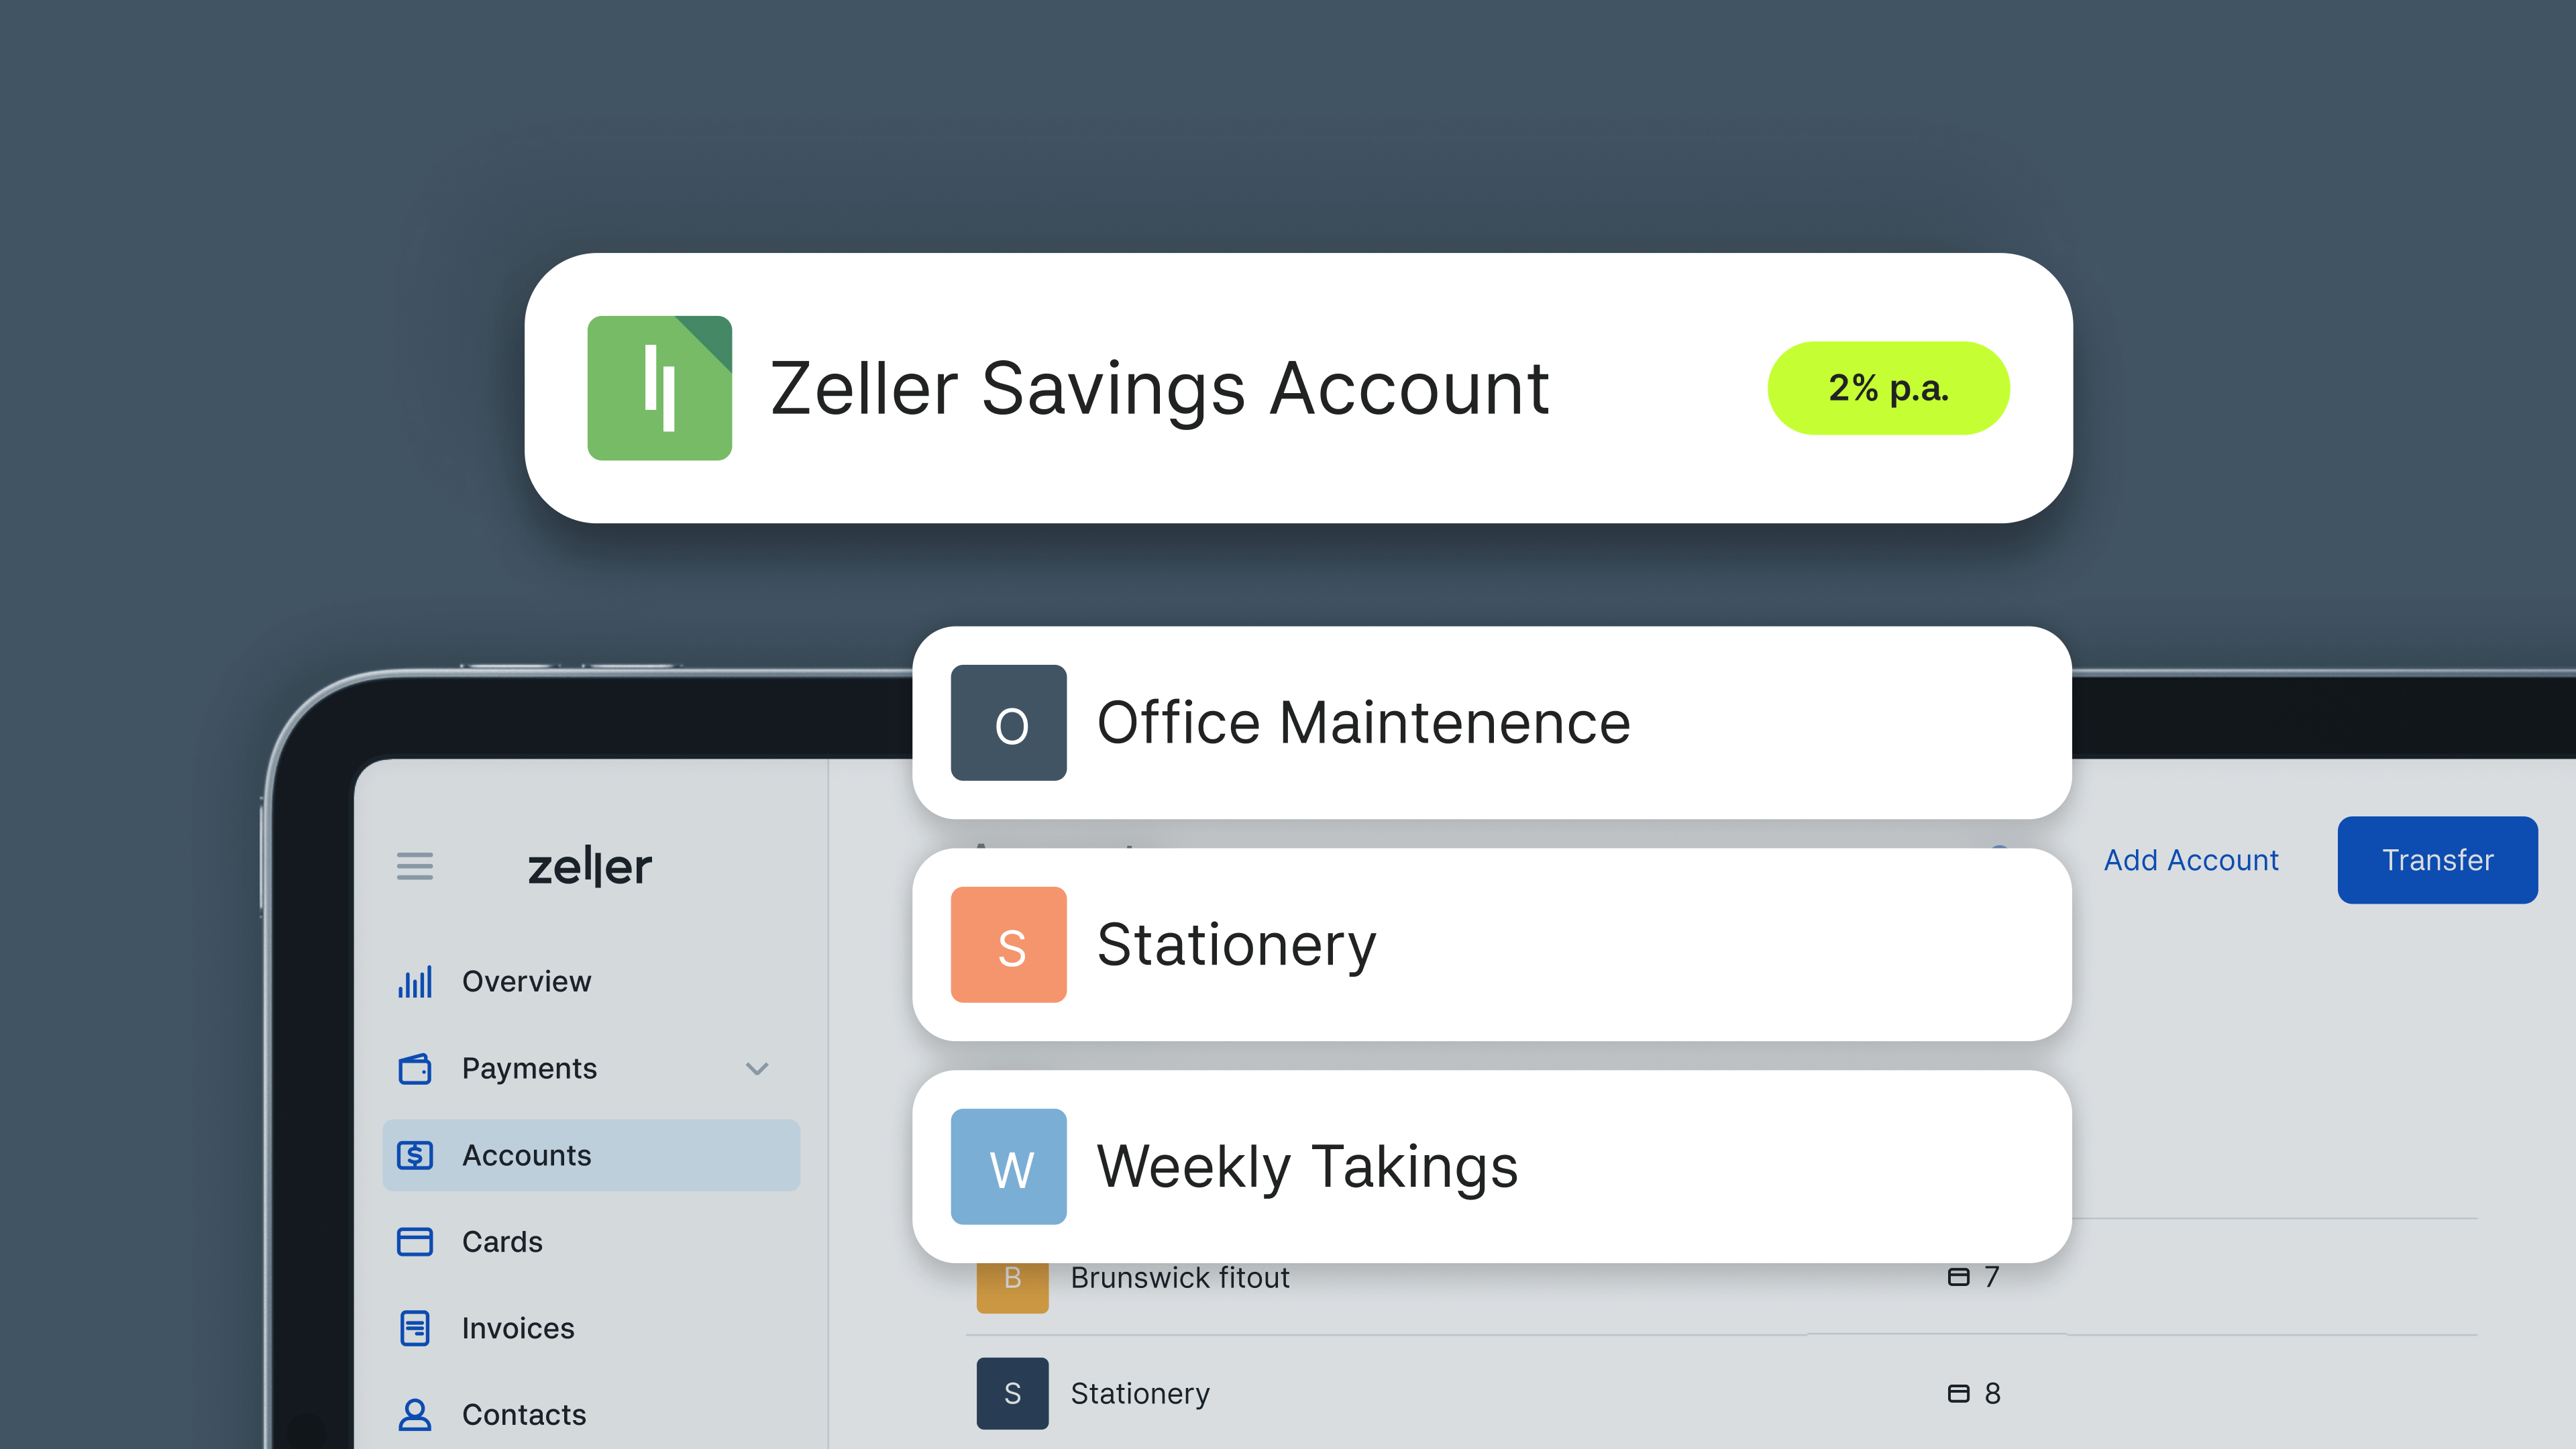 Zeller Savings Account